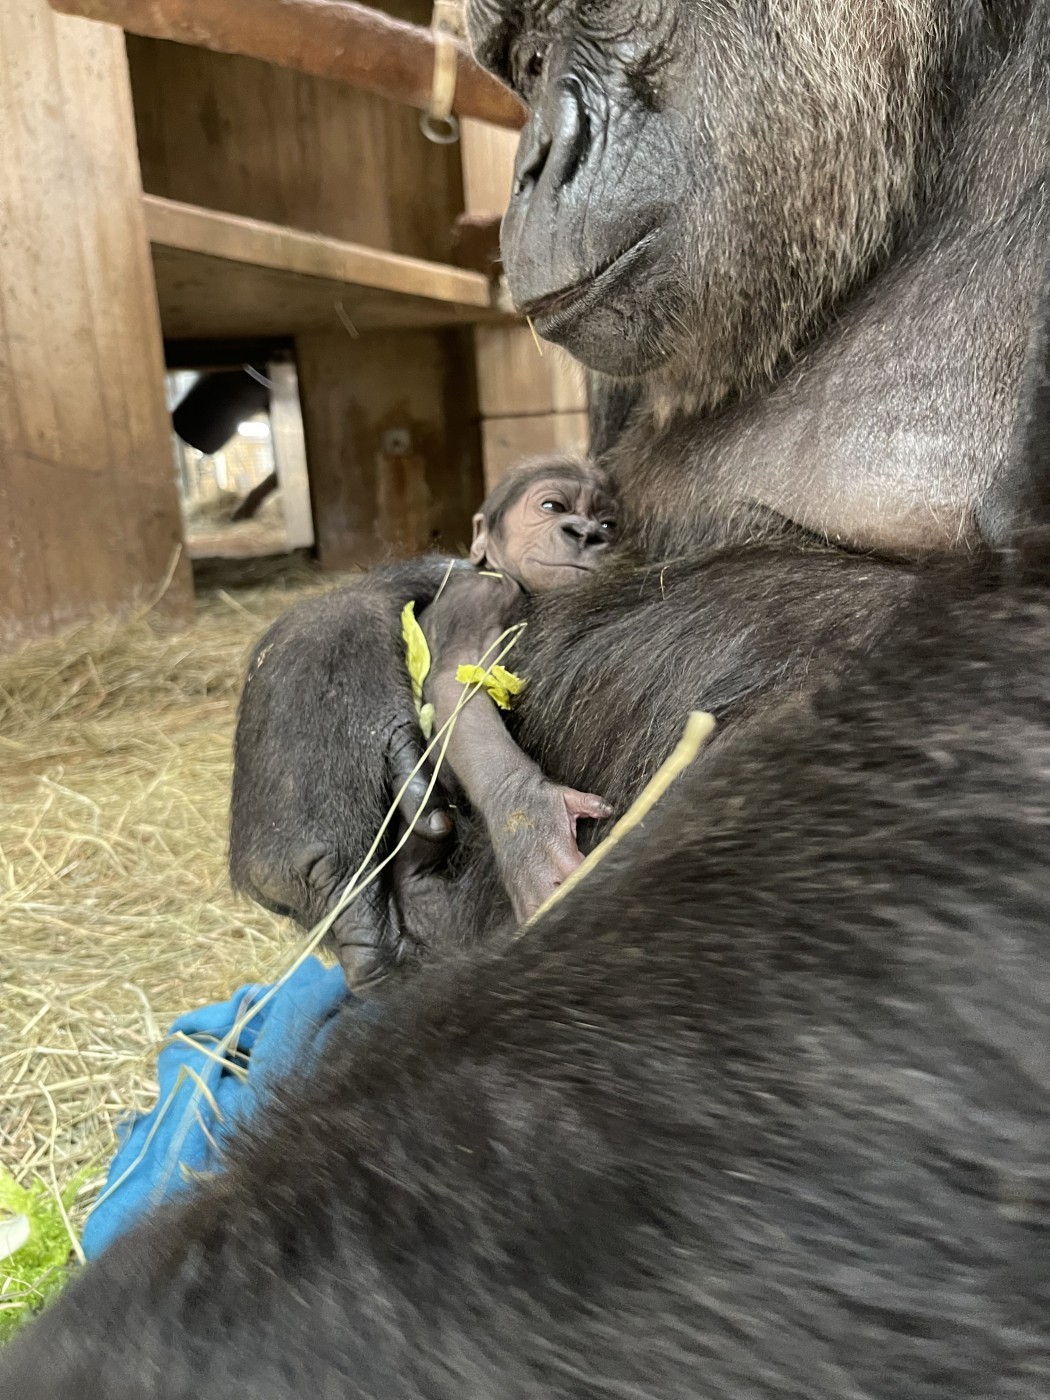 Bebê gorila e sua mãe no Zoológico Nacional do Smithsonian e Instituto de Biologia da Conservação, nos EUA  — Foto: Zoológico Nacional do Smithsonian e Instituto de Biologia da Conservação